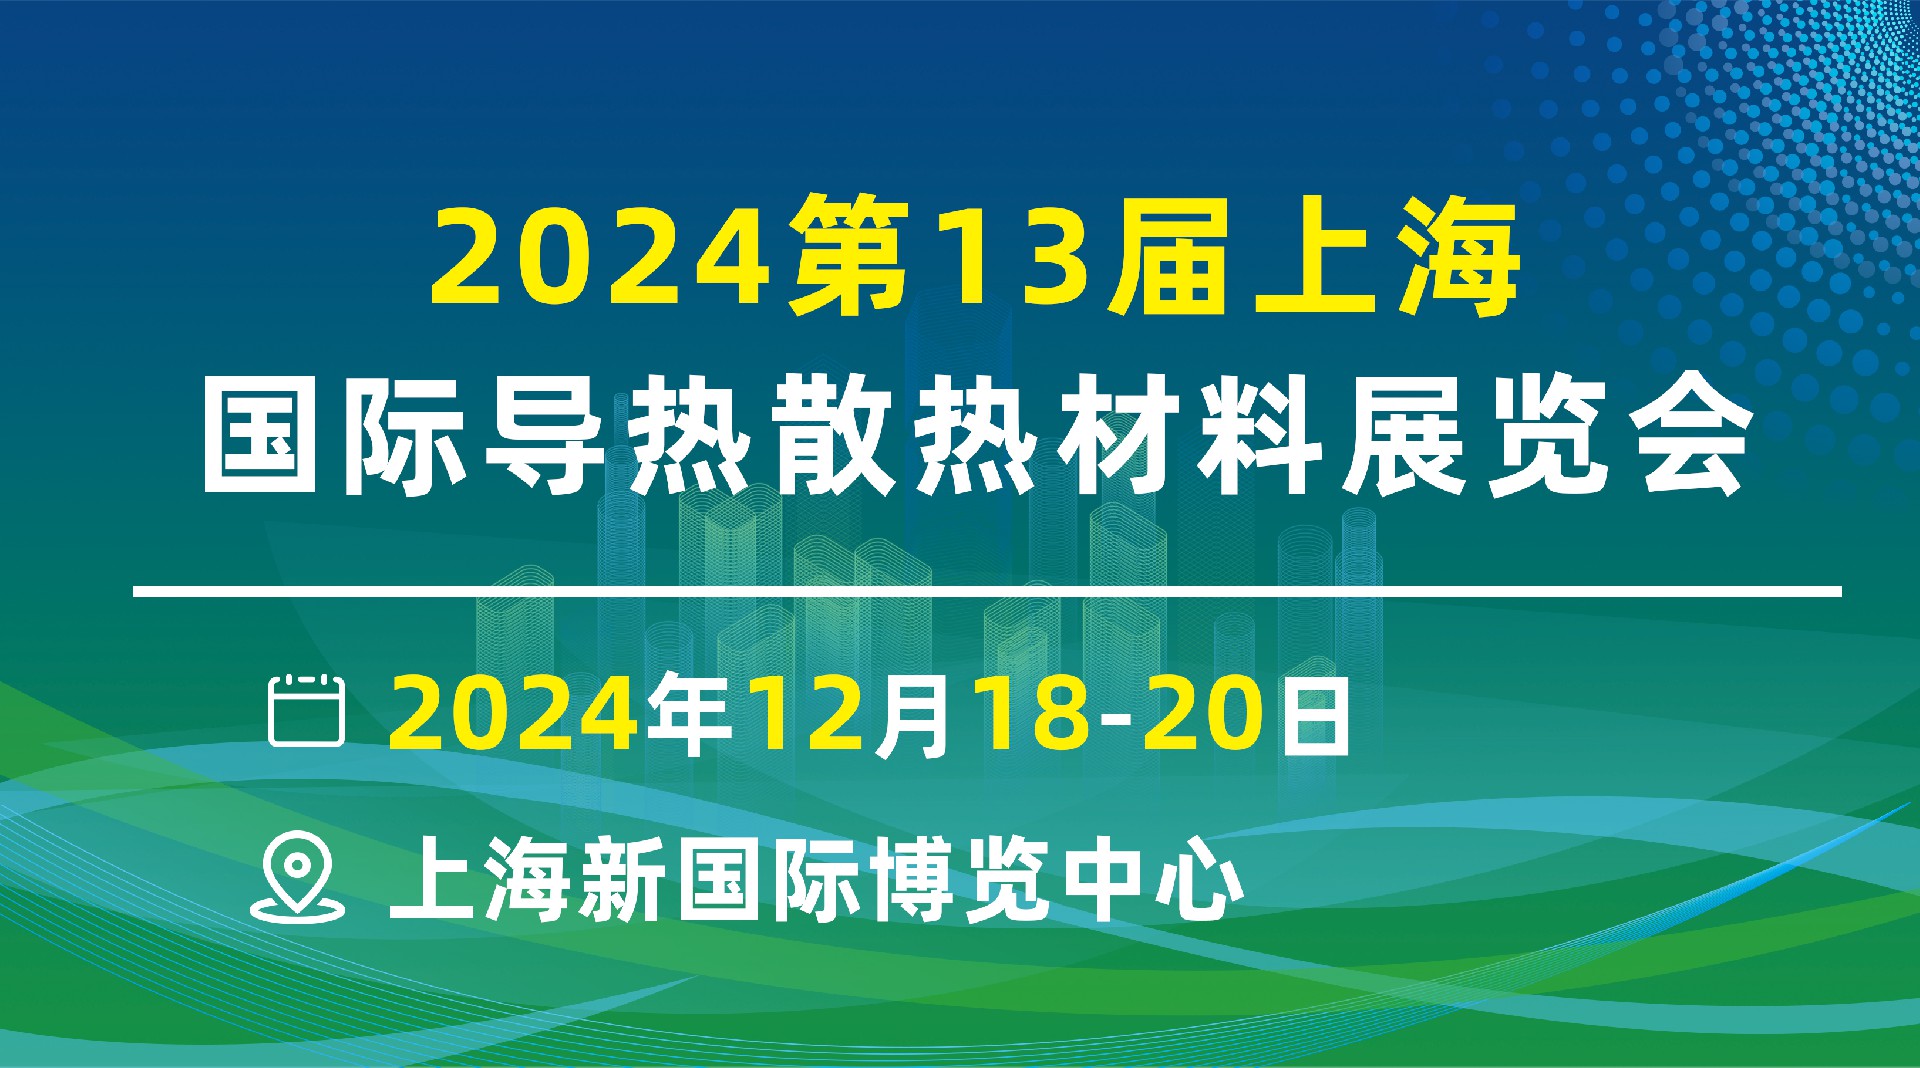 热管理大会｜2024热管理材料与技术盛会｜上海浦东2024.12.18-20